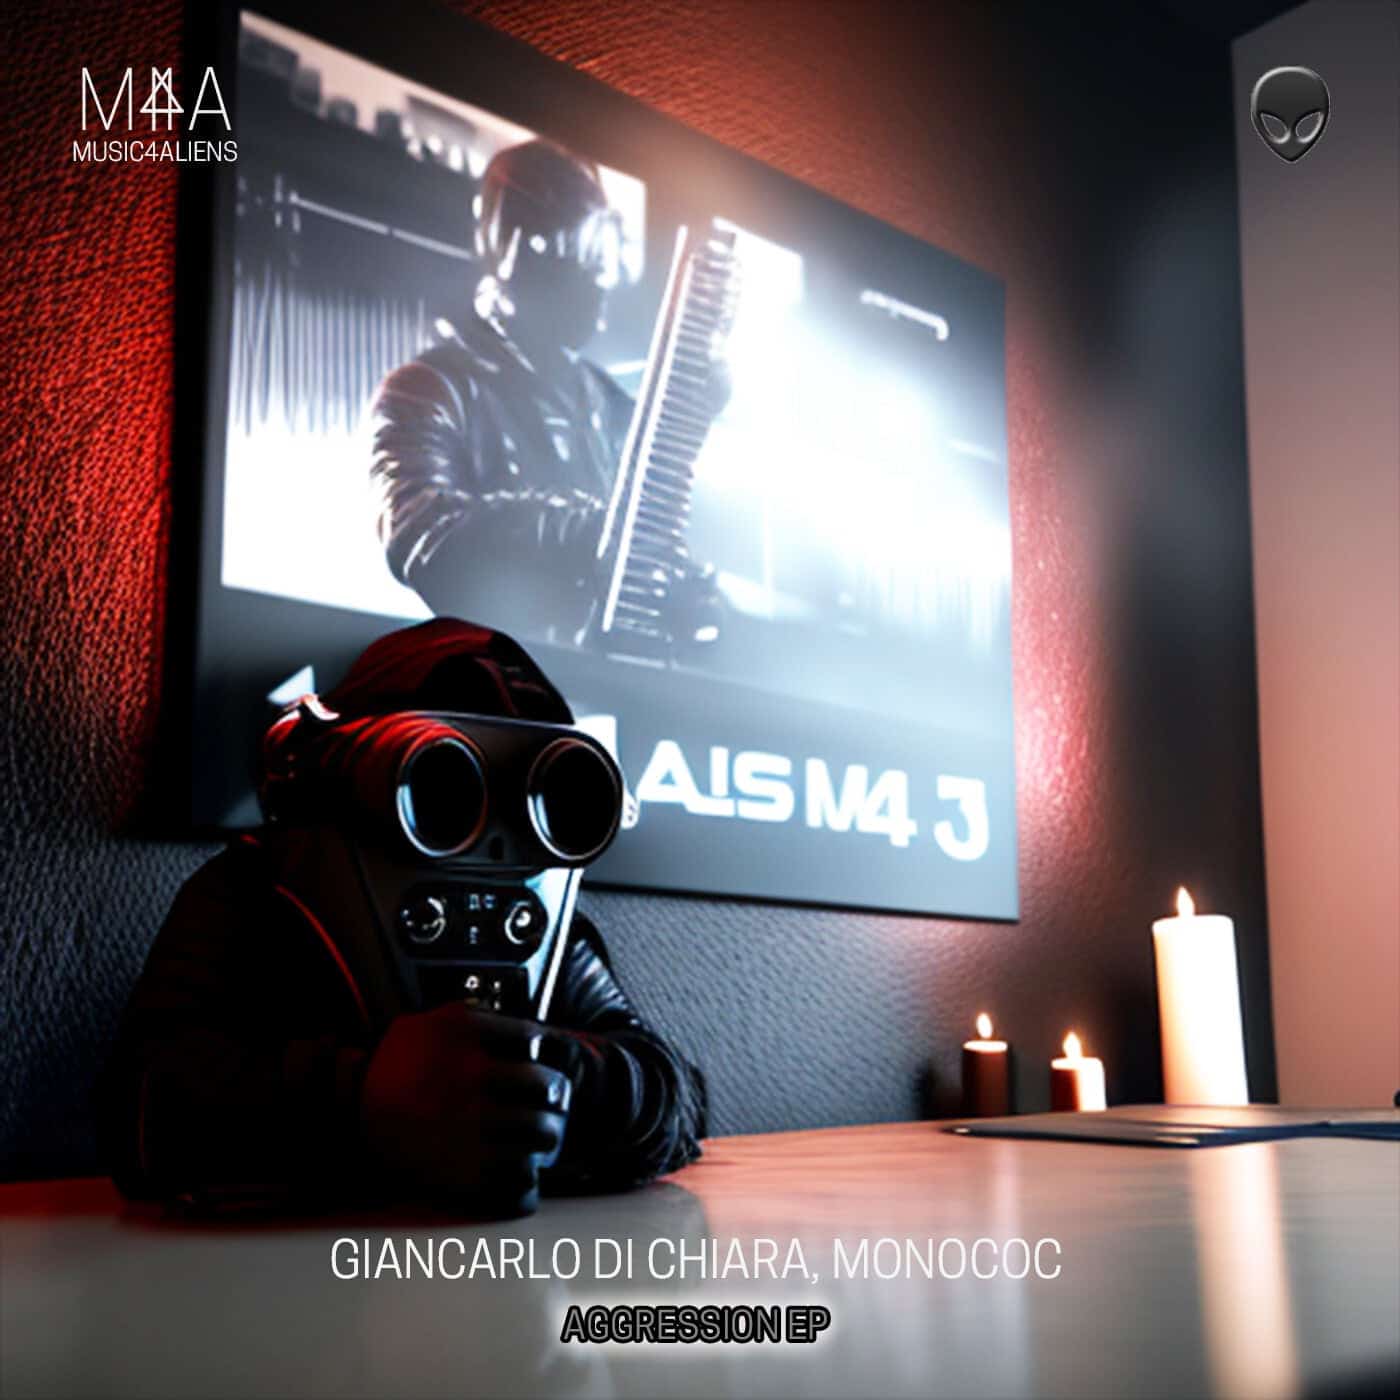 image cover: Monococ, Giancarlo Di Chiara - Aggression EP on Music4Aliens